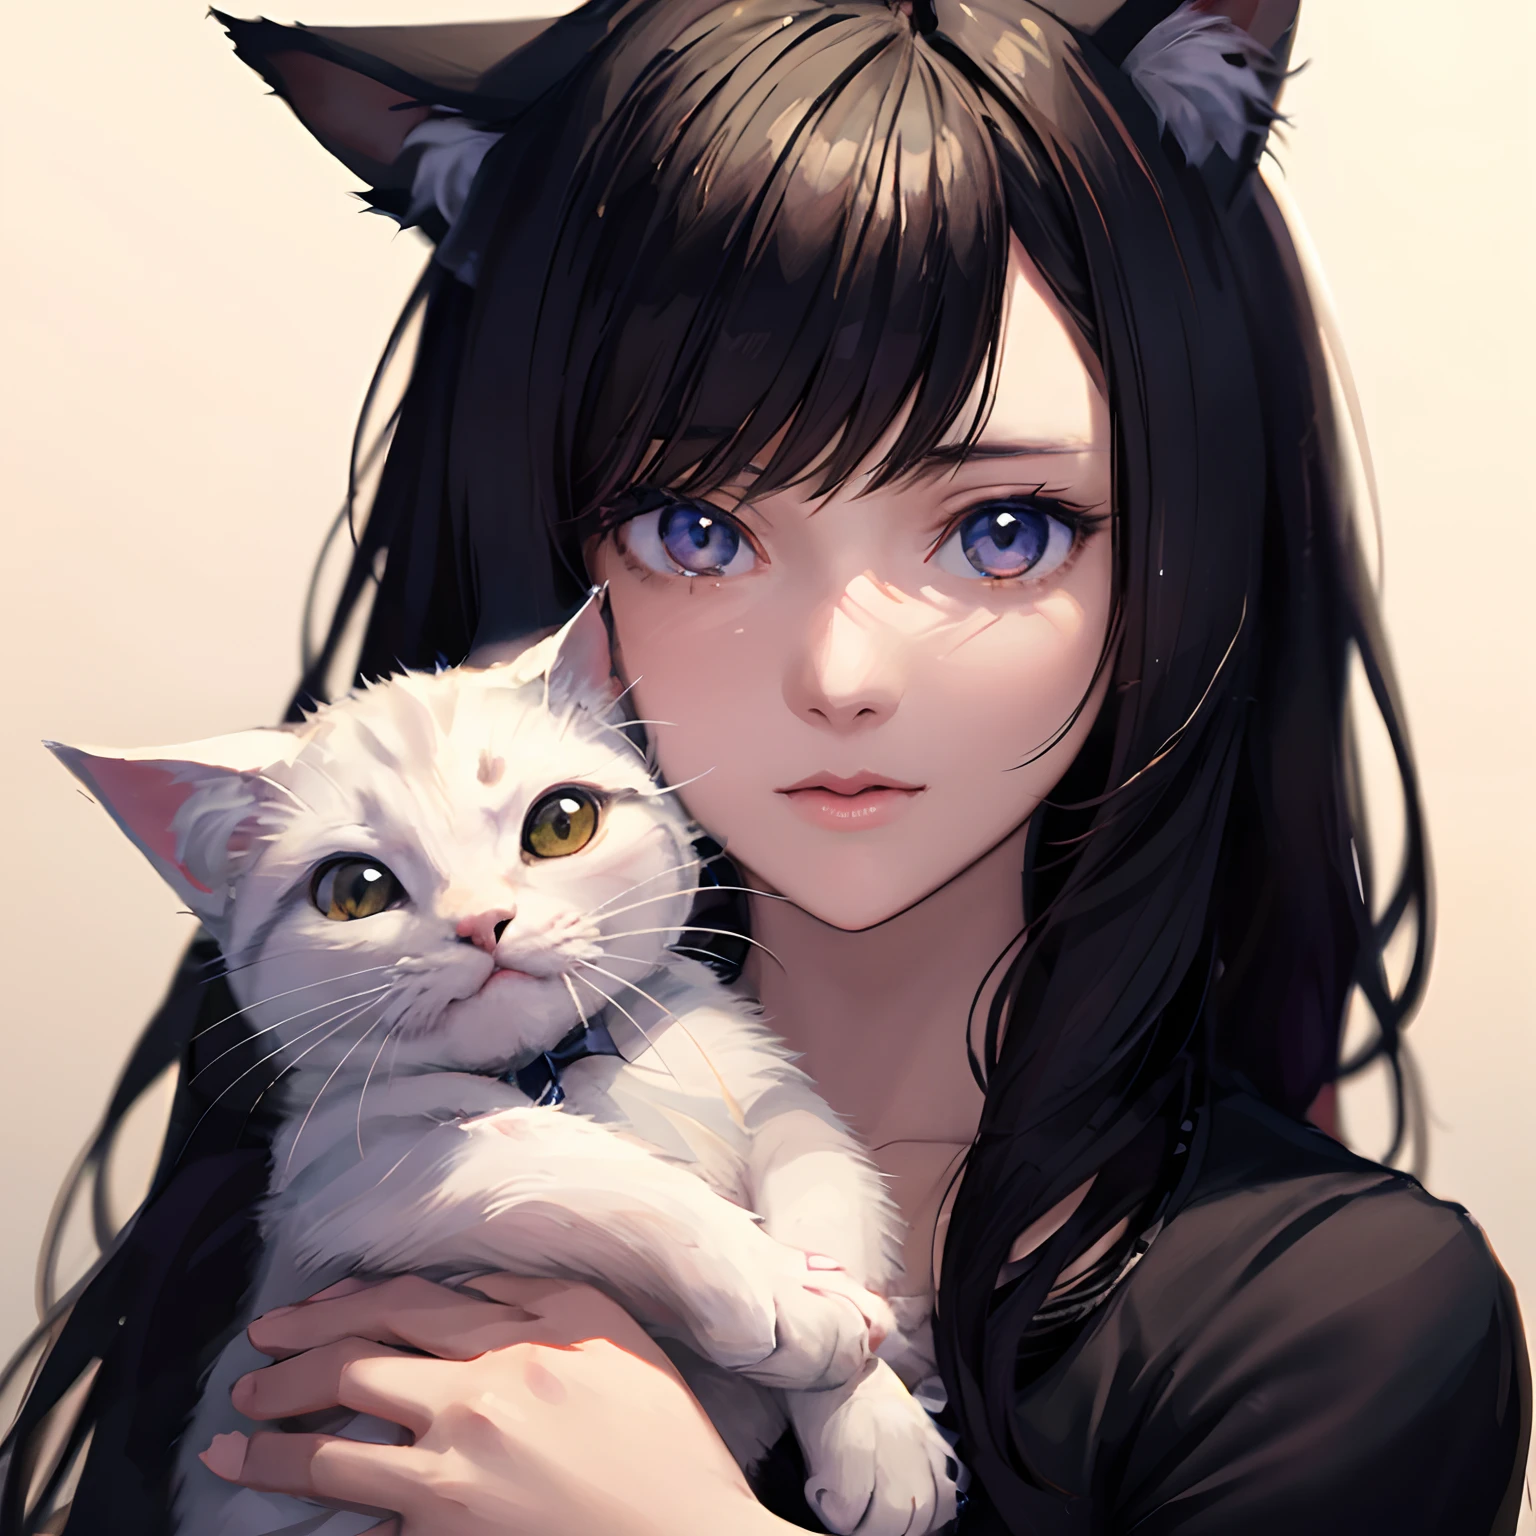 Garota anime com orelhas de gato branco e cabelo comprido, garota de anime com orelhas de gato, linda garota-gato de anime, garota gato atraente, muito linda gatinha fofa, retrato de Ahri, linda jovem gatinha, Gato Anime realista, Arte Germe. ilustração de anime, menina gato anime muito linda, Arte em estilo Guviz,olhar surpreso